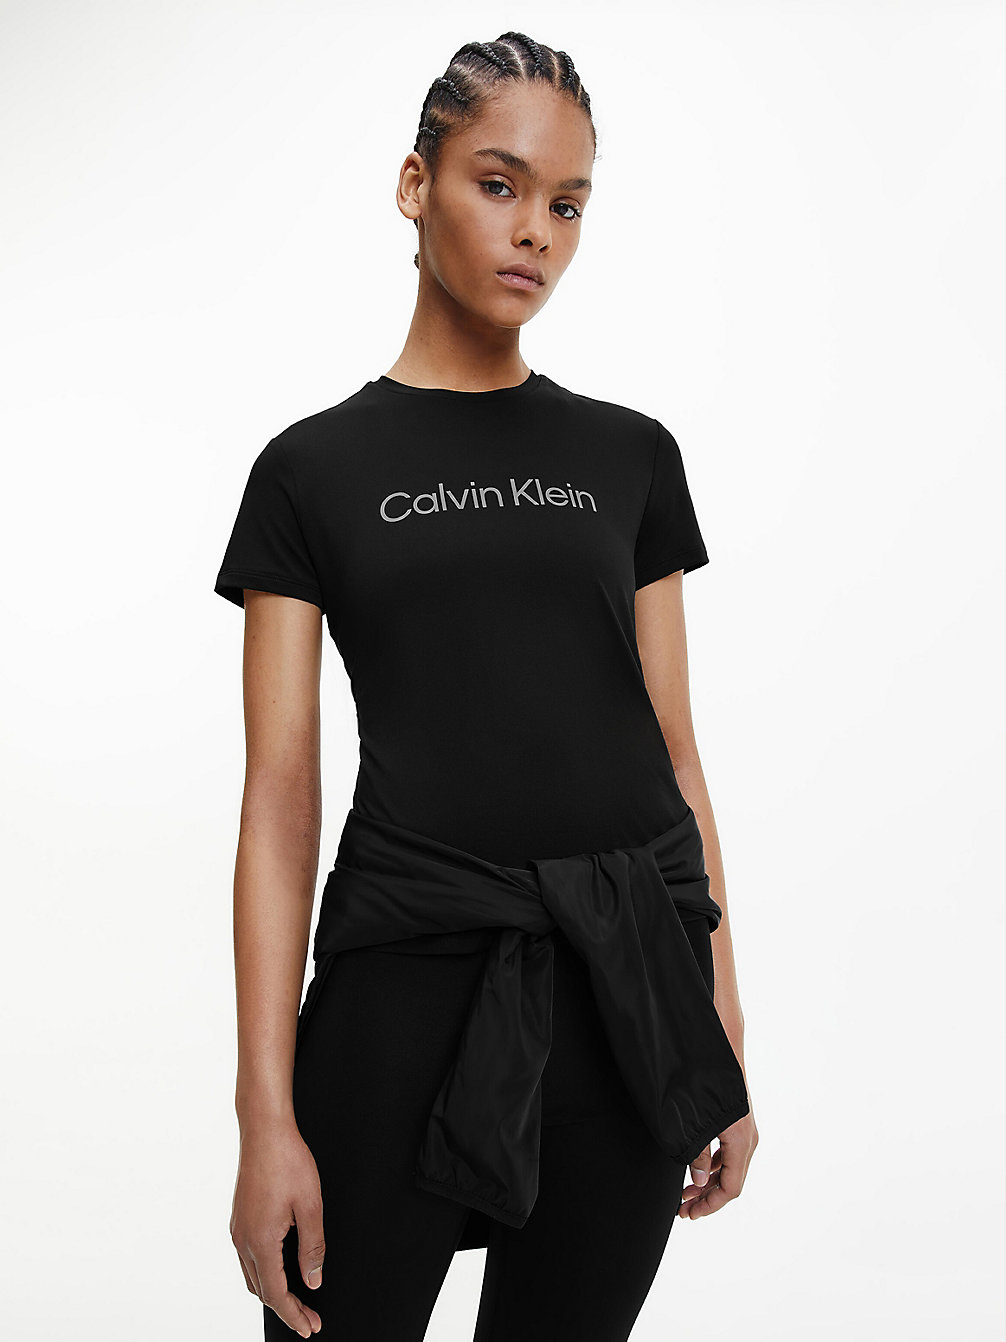 T-Shirt De Sport > BLACK BEAUTY > undefined femmes > Calvin Klein